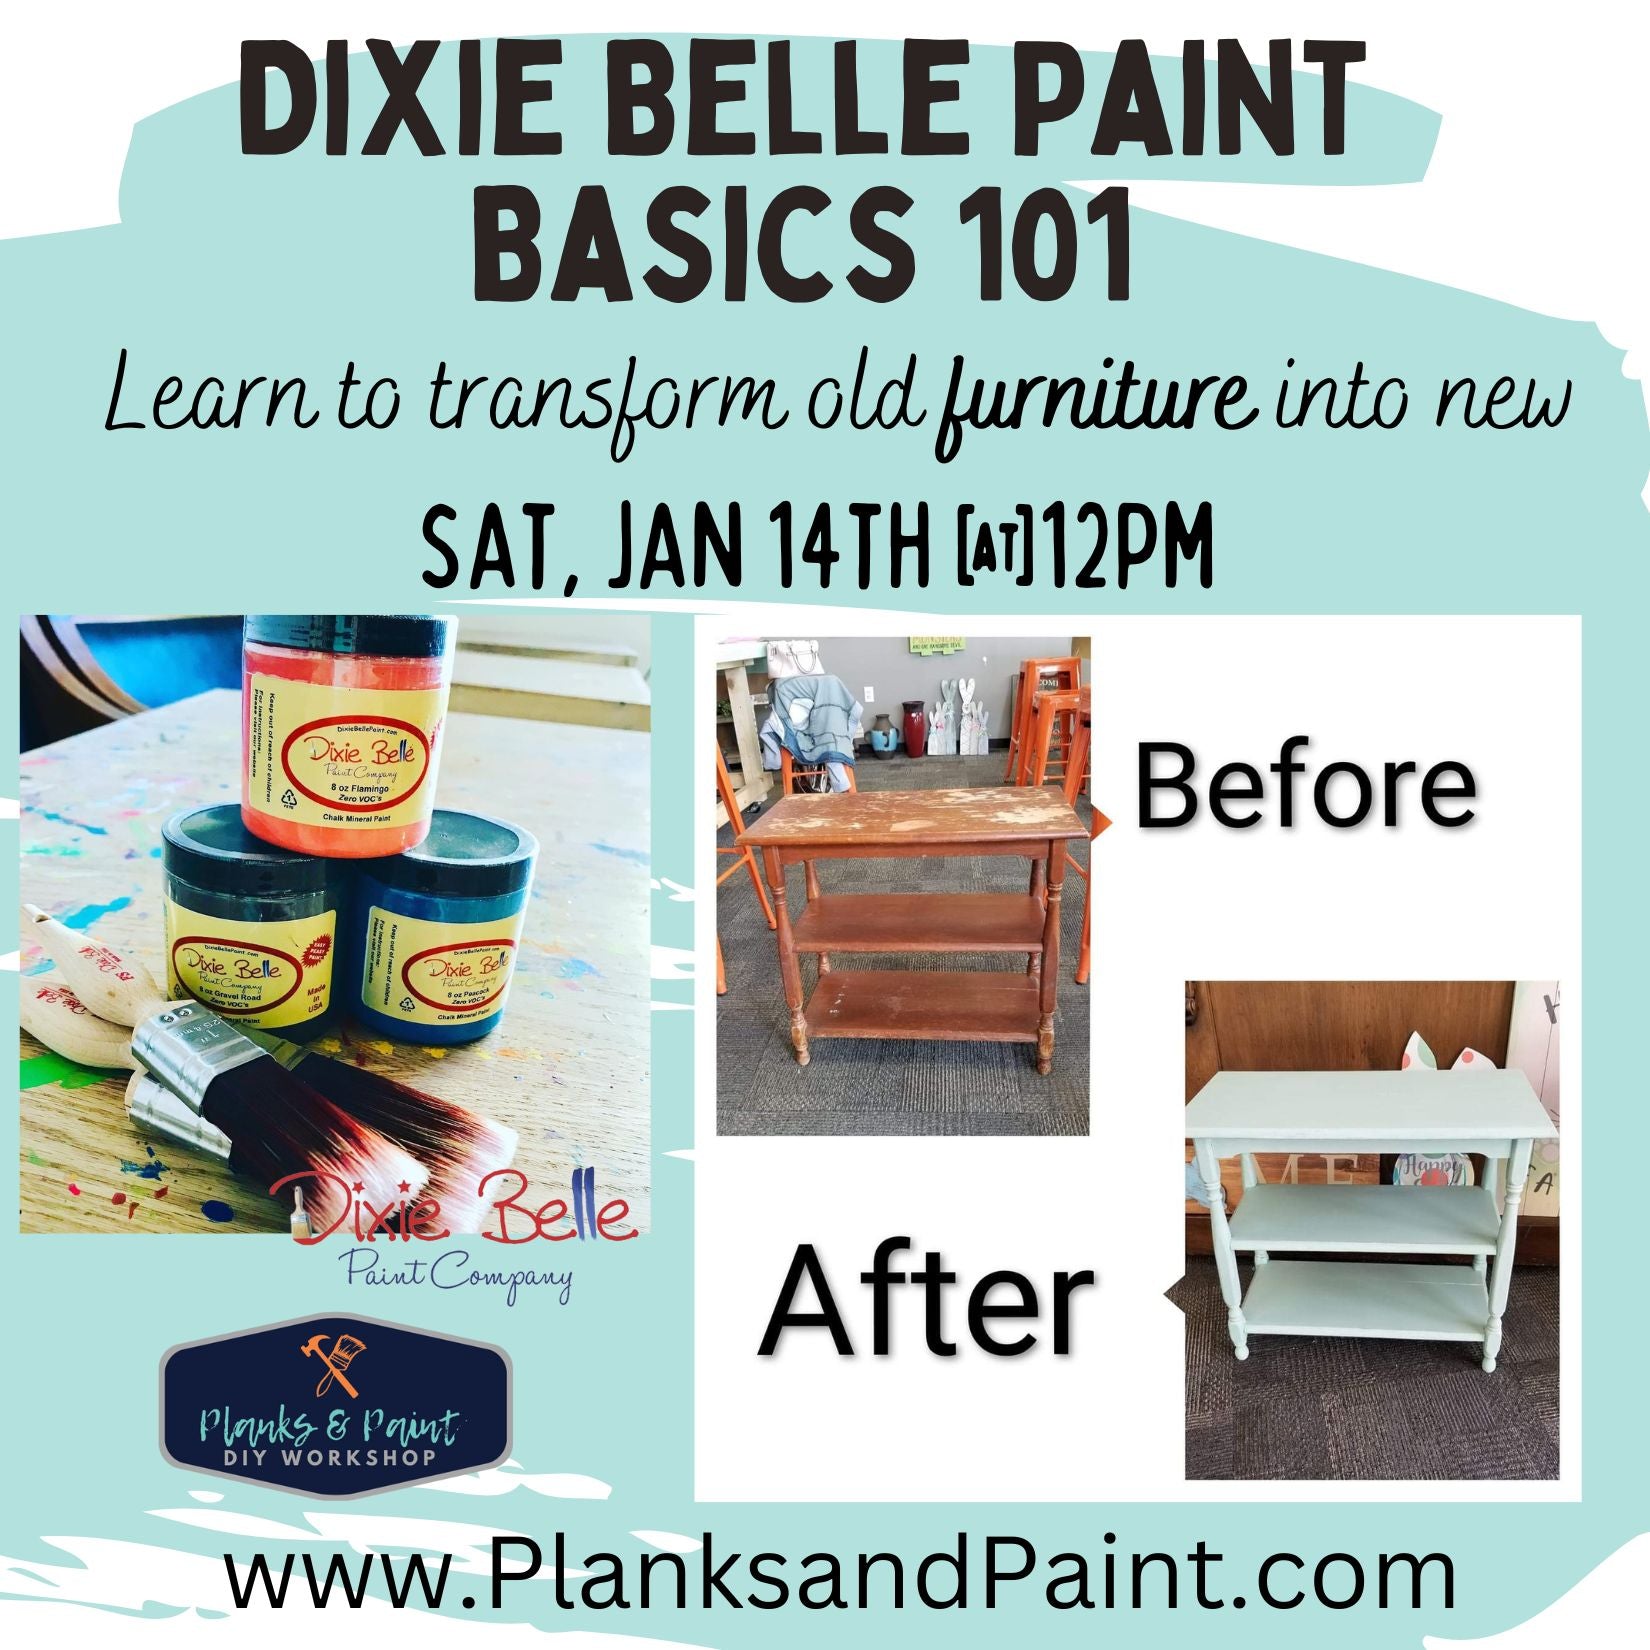 Sanding Sponge - Dixie Belle Paint Company